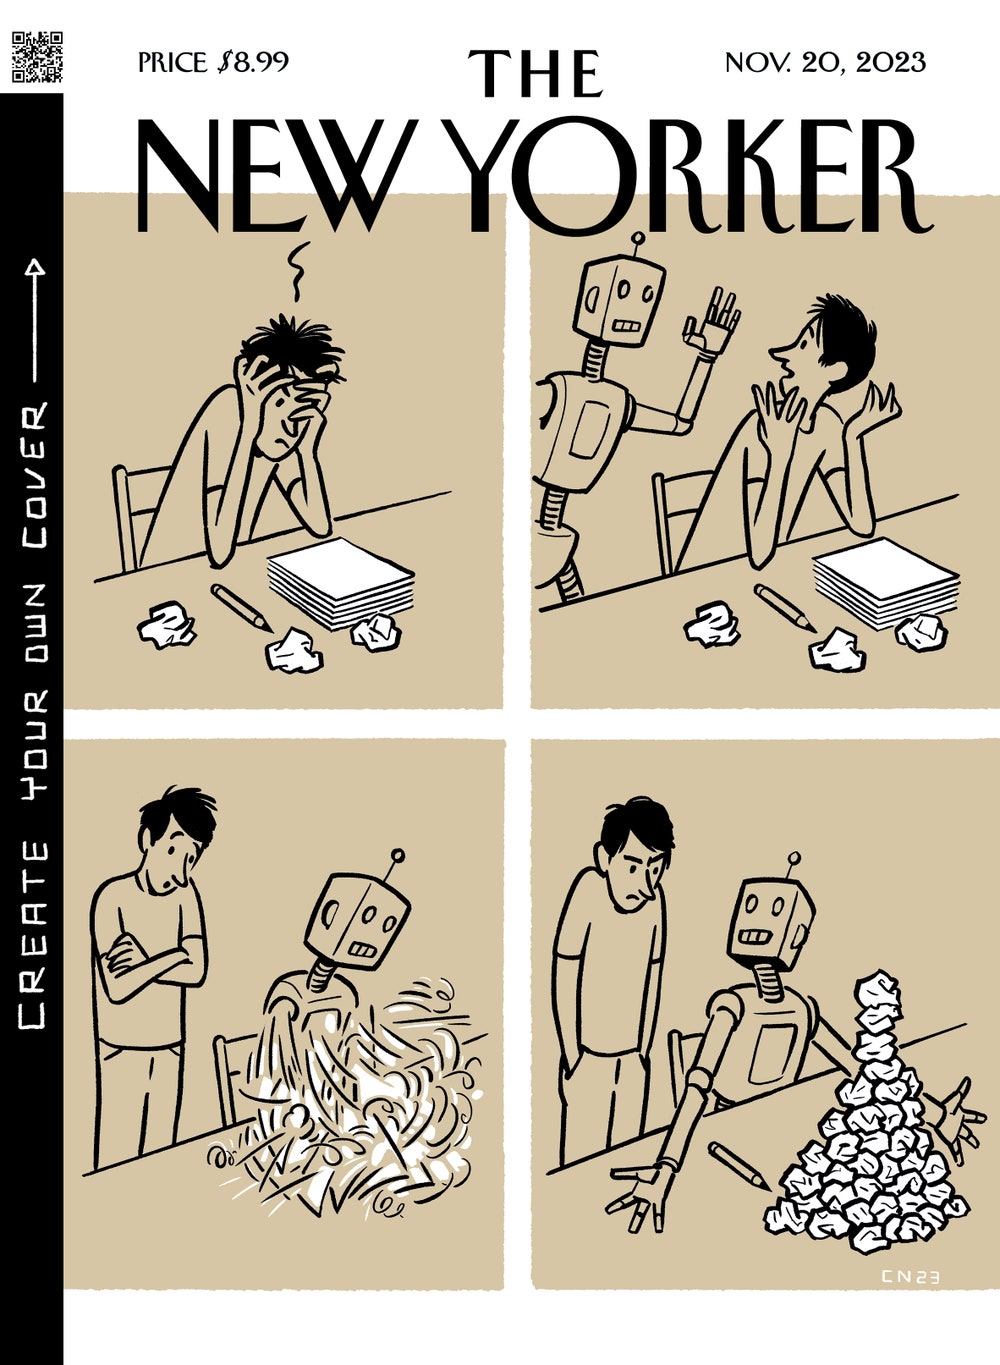 The New Yorker, November 20, 2023